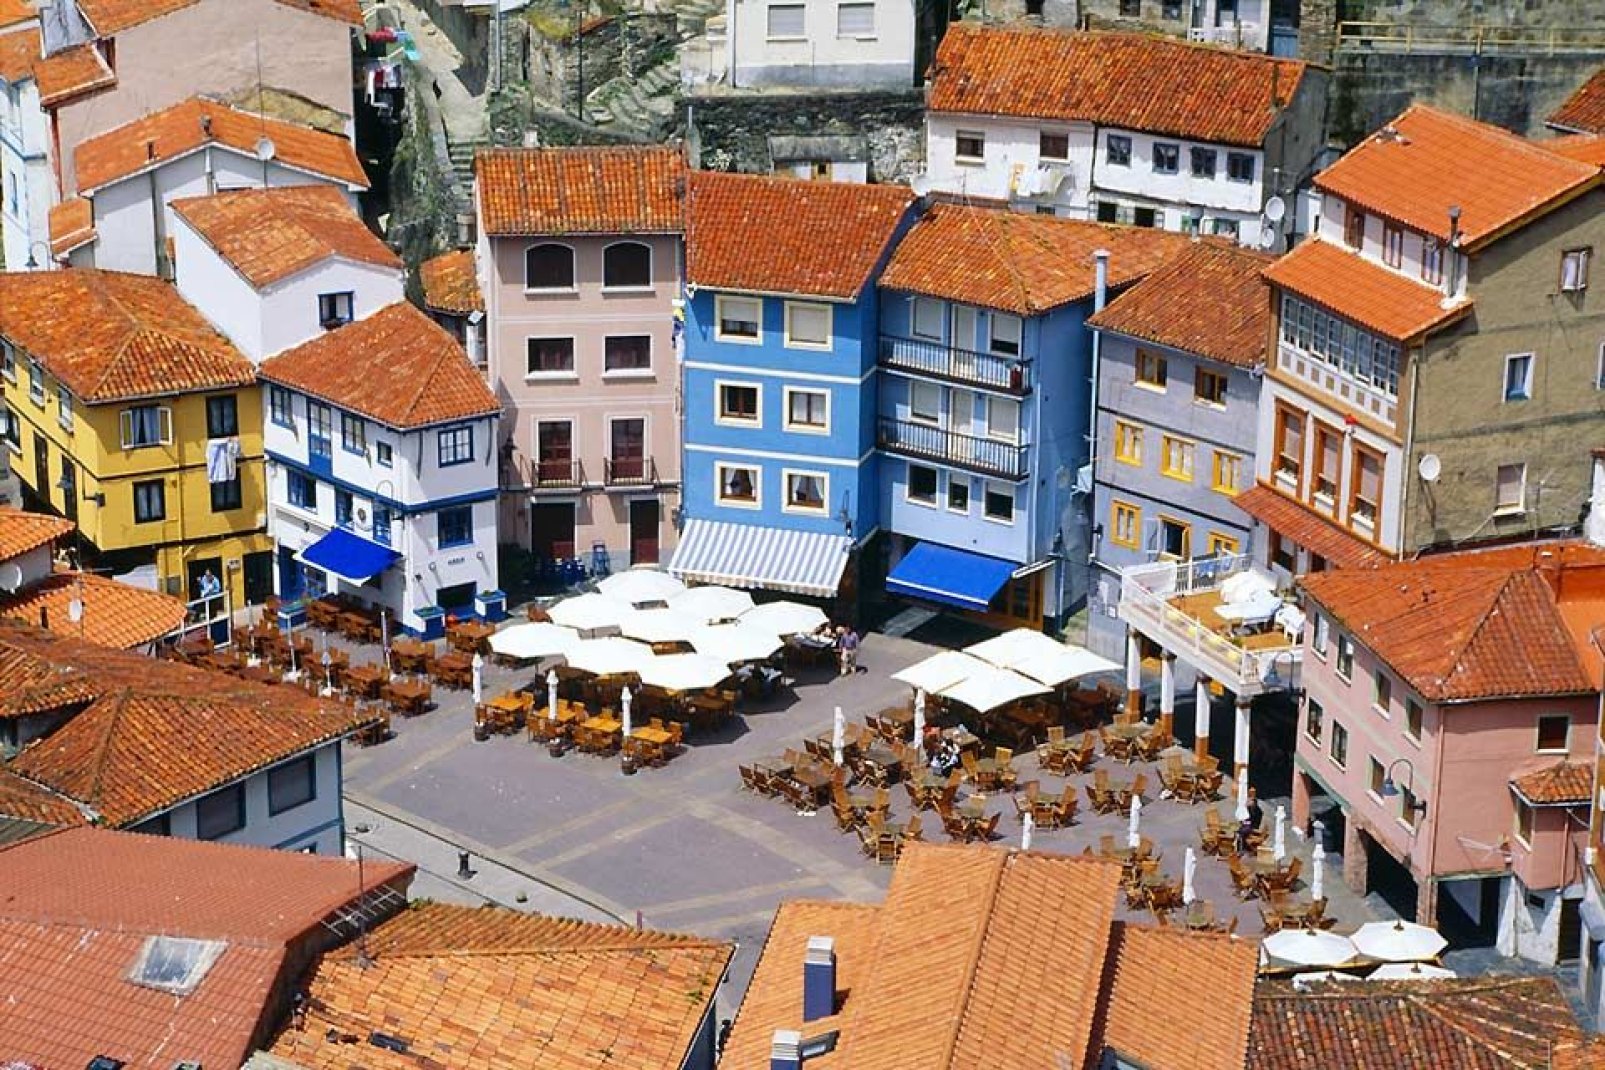 Cudillero wird im Sommer von zahlreichen Touristen besichtigt. Dieses Dorf gehört zu den berühmtesten Touristenorten in Asturien.